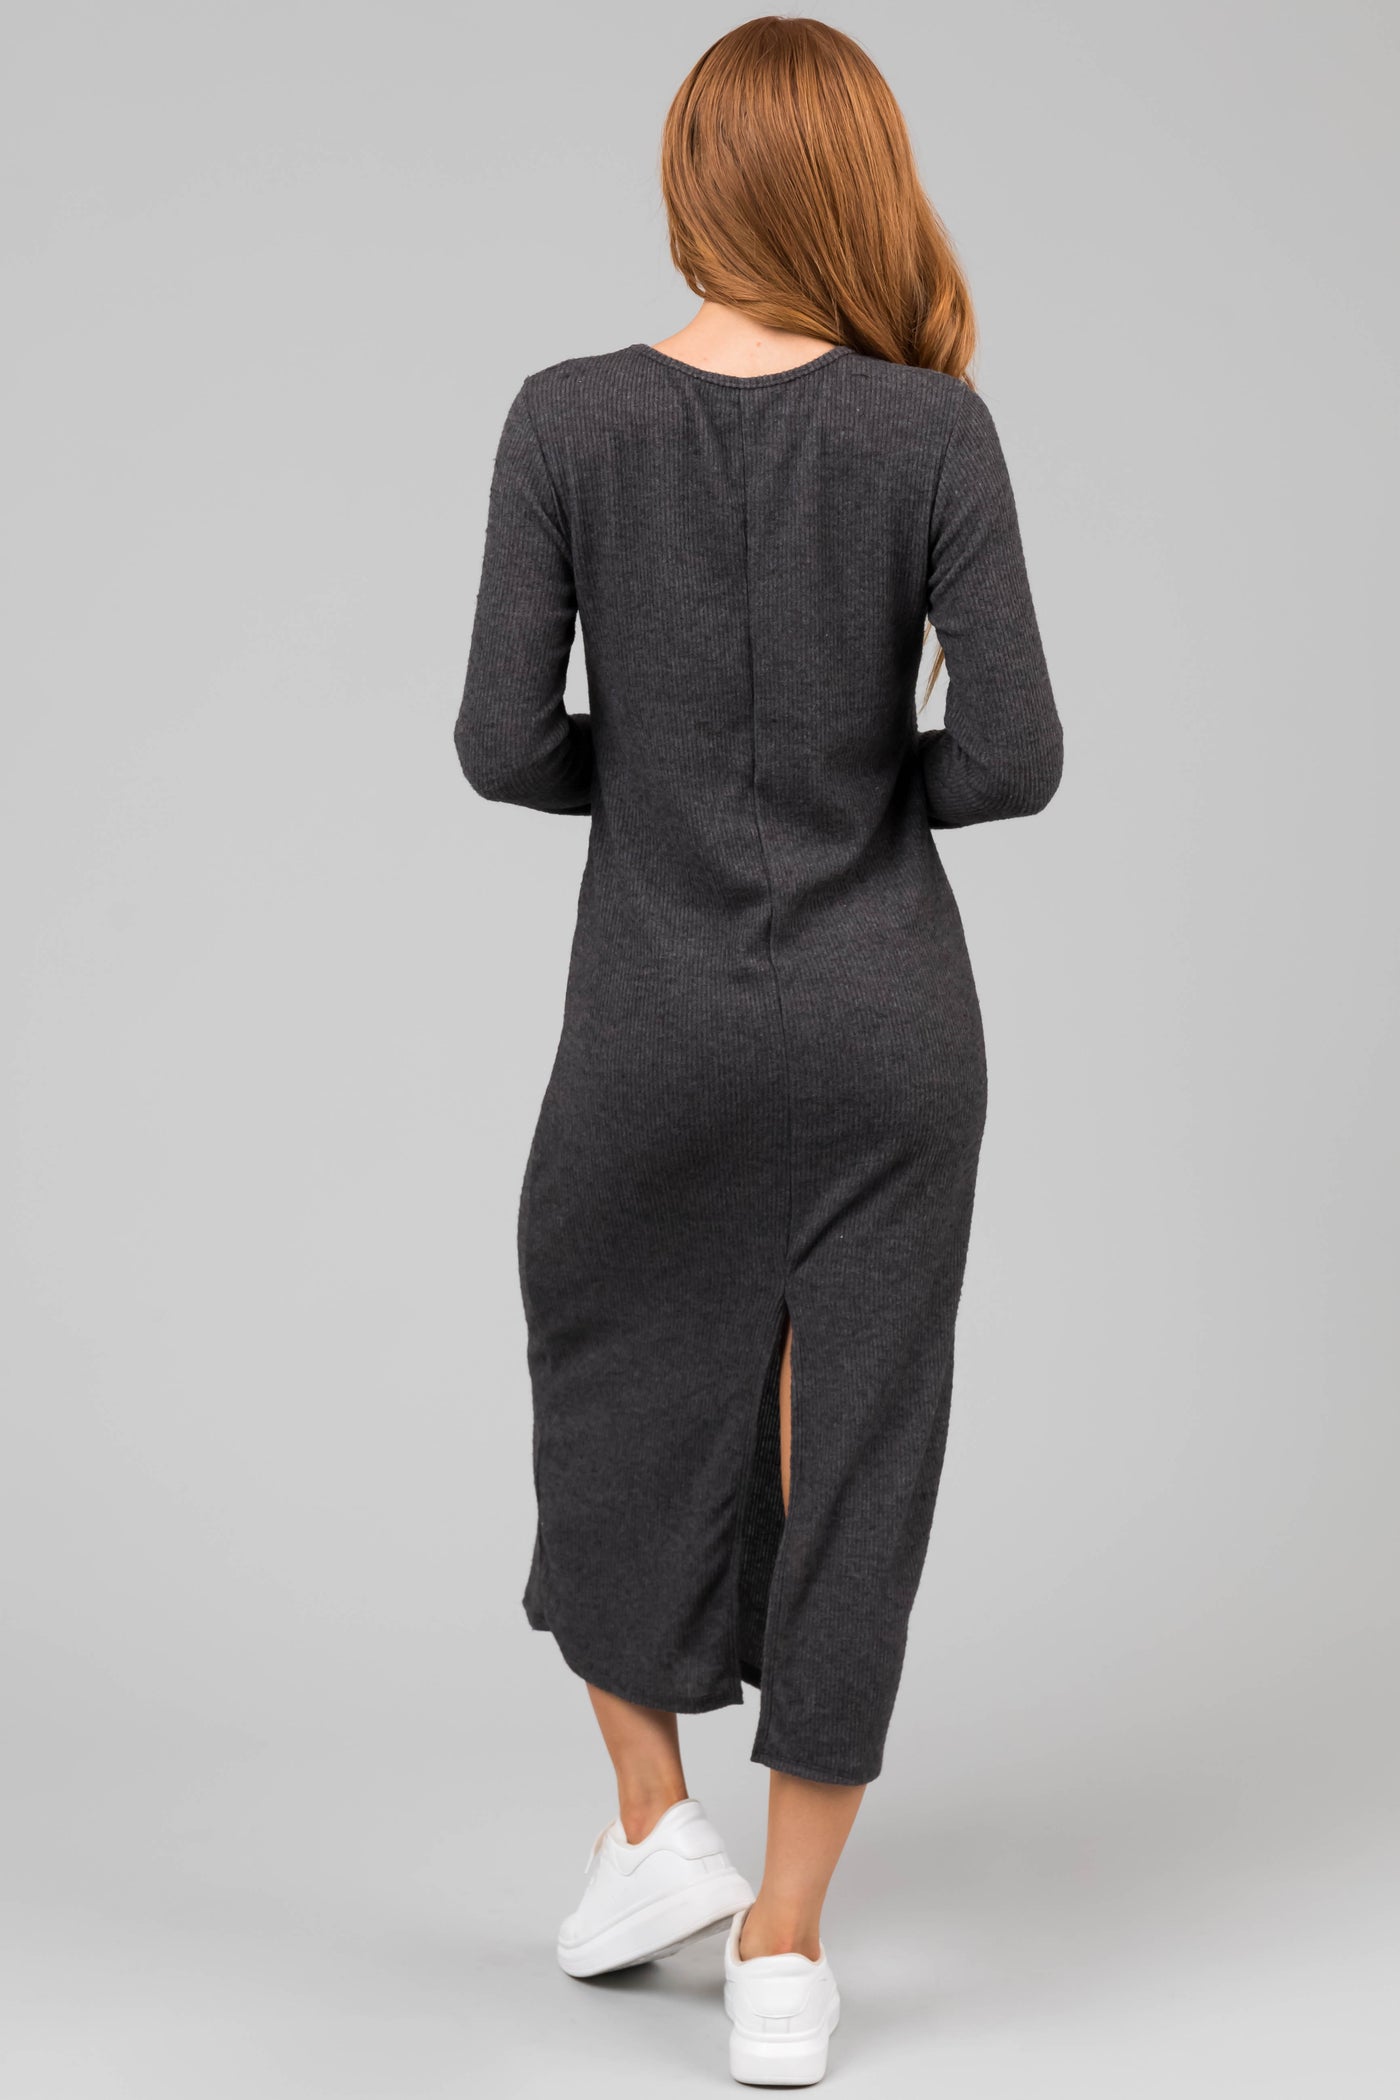 Charcoal Lightweight Knit Long Sleeve Maxi Dress